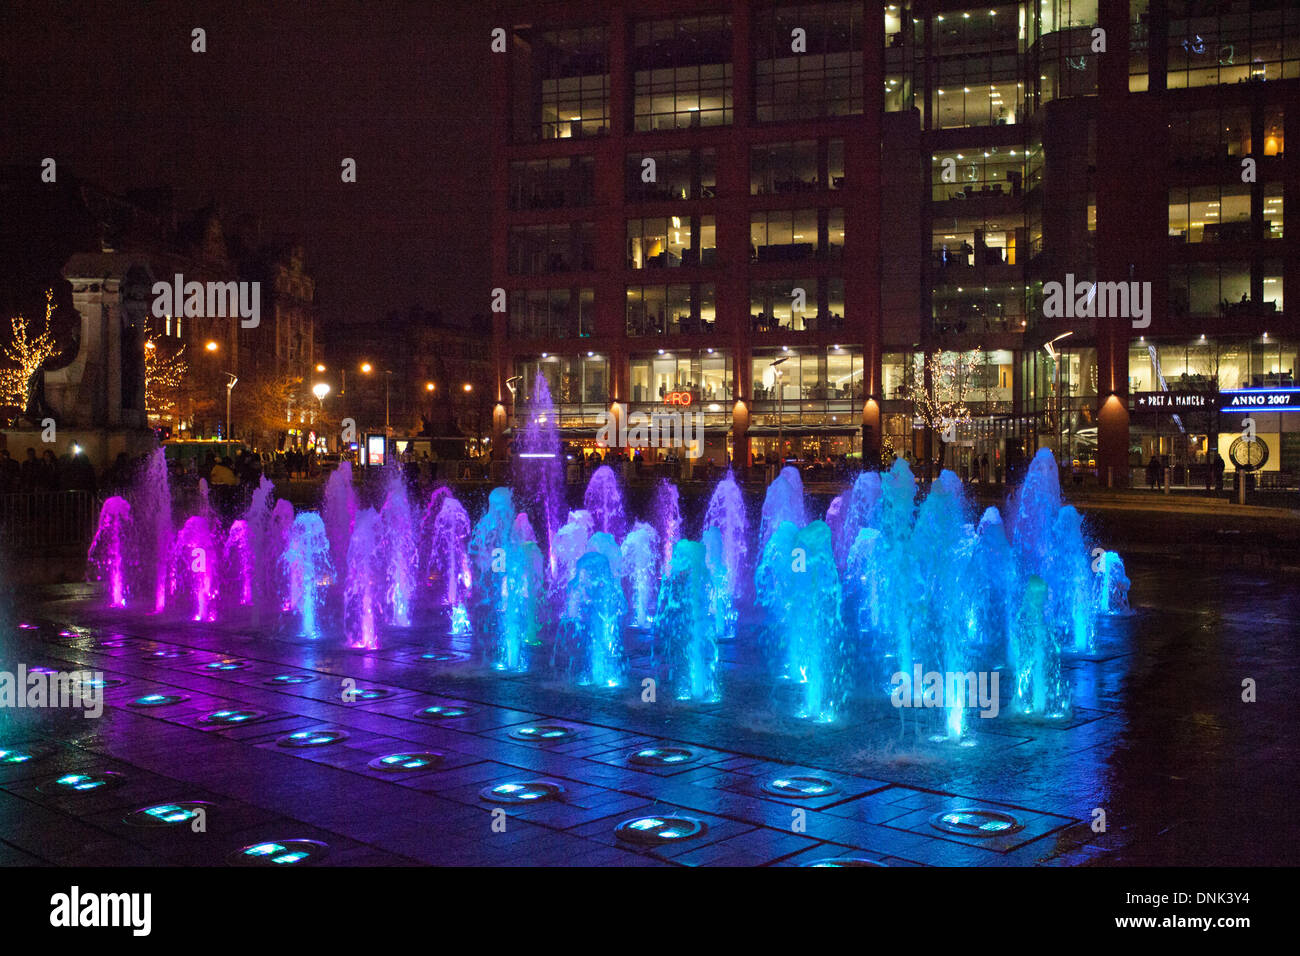 Des fontaines colorées illuminées en bleu dans les jardins de Piccadilly, alors que Manchester a accueilli des célébrations du nouvel an et des feux d'artifice parrainés par des fonds privés, avec Big Wheel et Michael Jackson Thriller qui ont contribué à l'année 2014. Banque D'Images